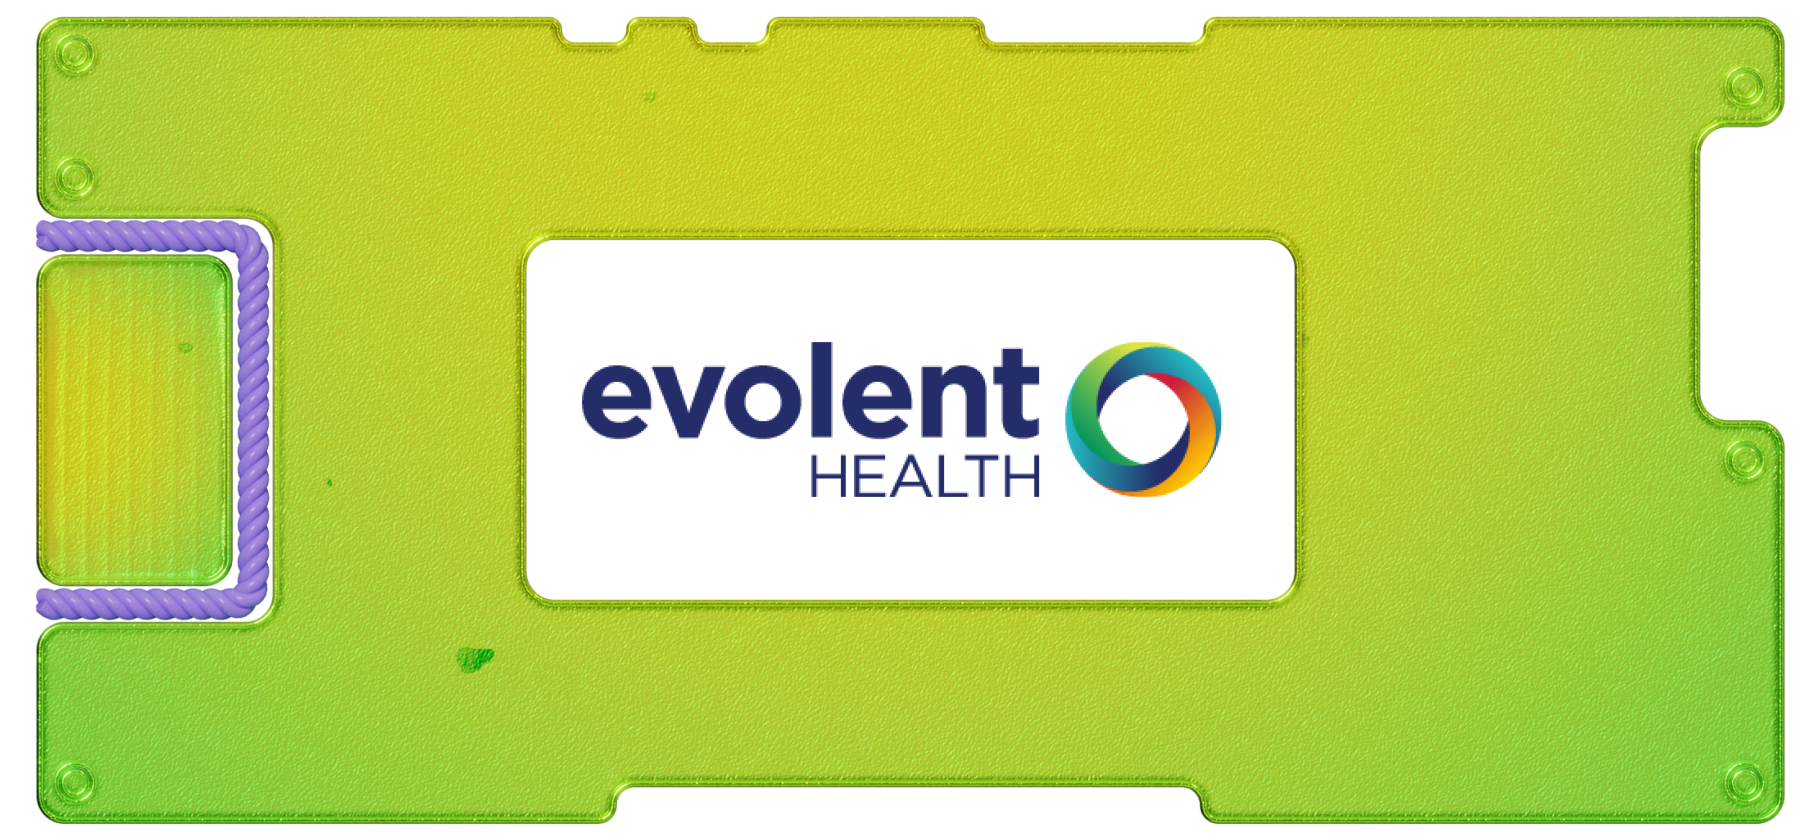 Инвестидея: Evolent Health, потому что только по записи